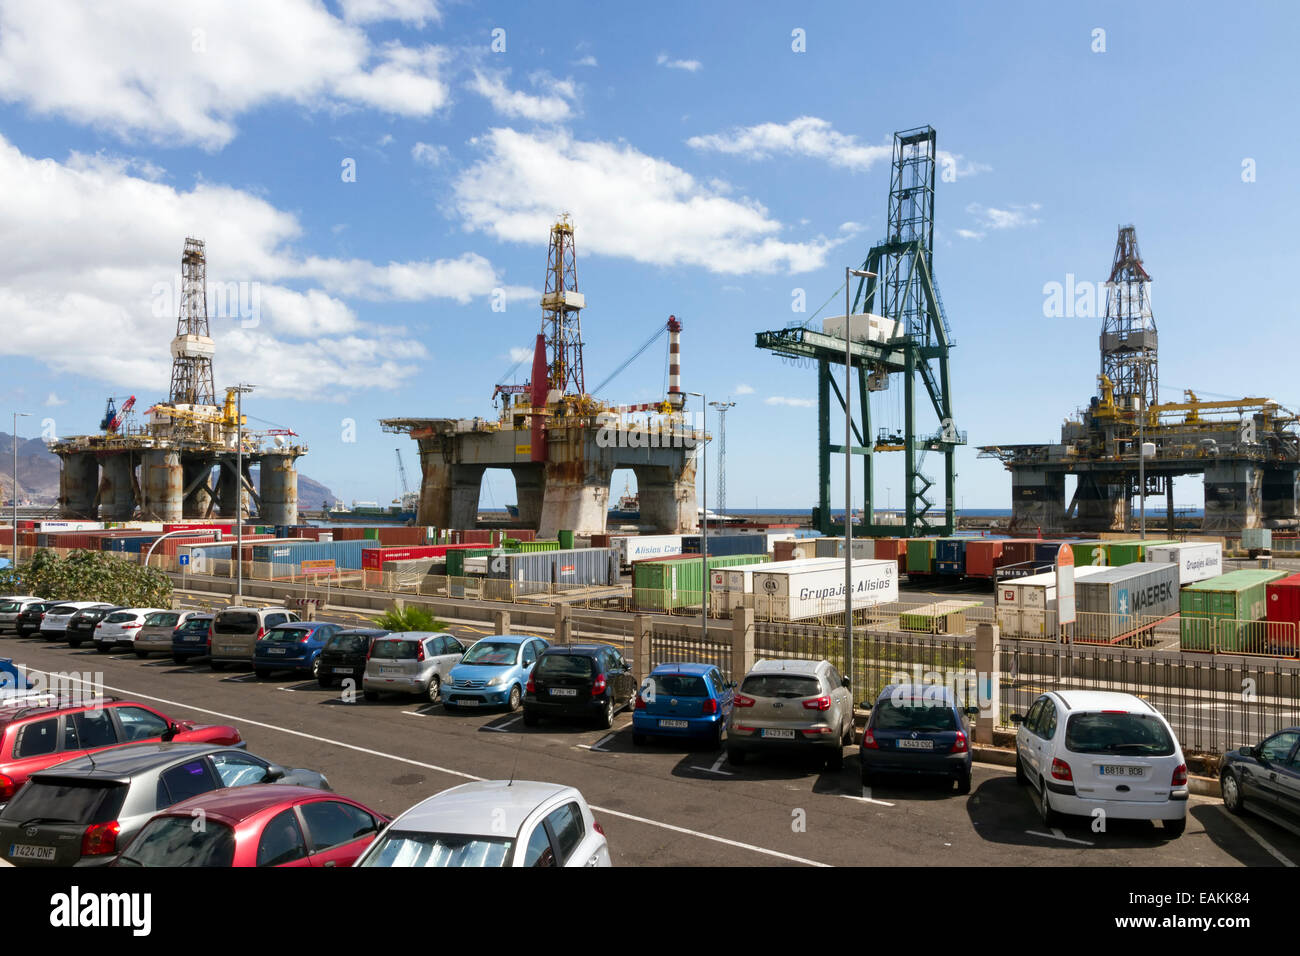 Oil rig platforms at Santa Cruz de Tenerife Stock Photo